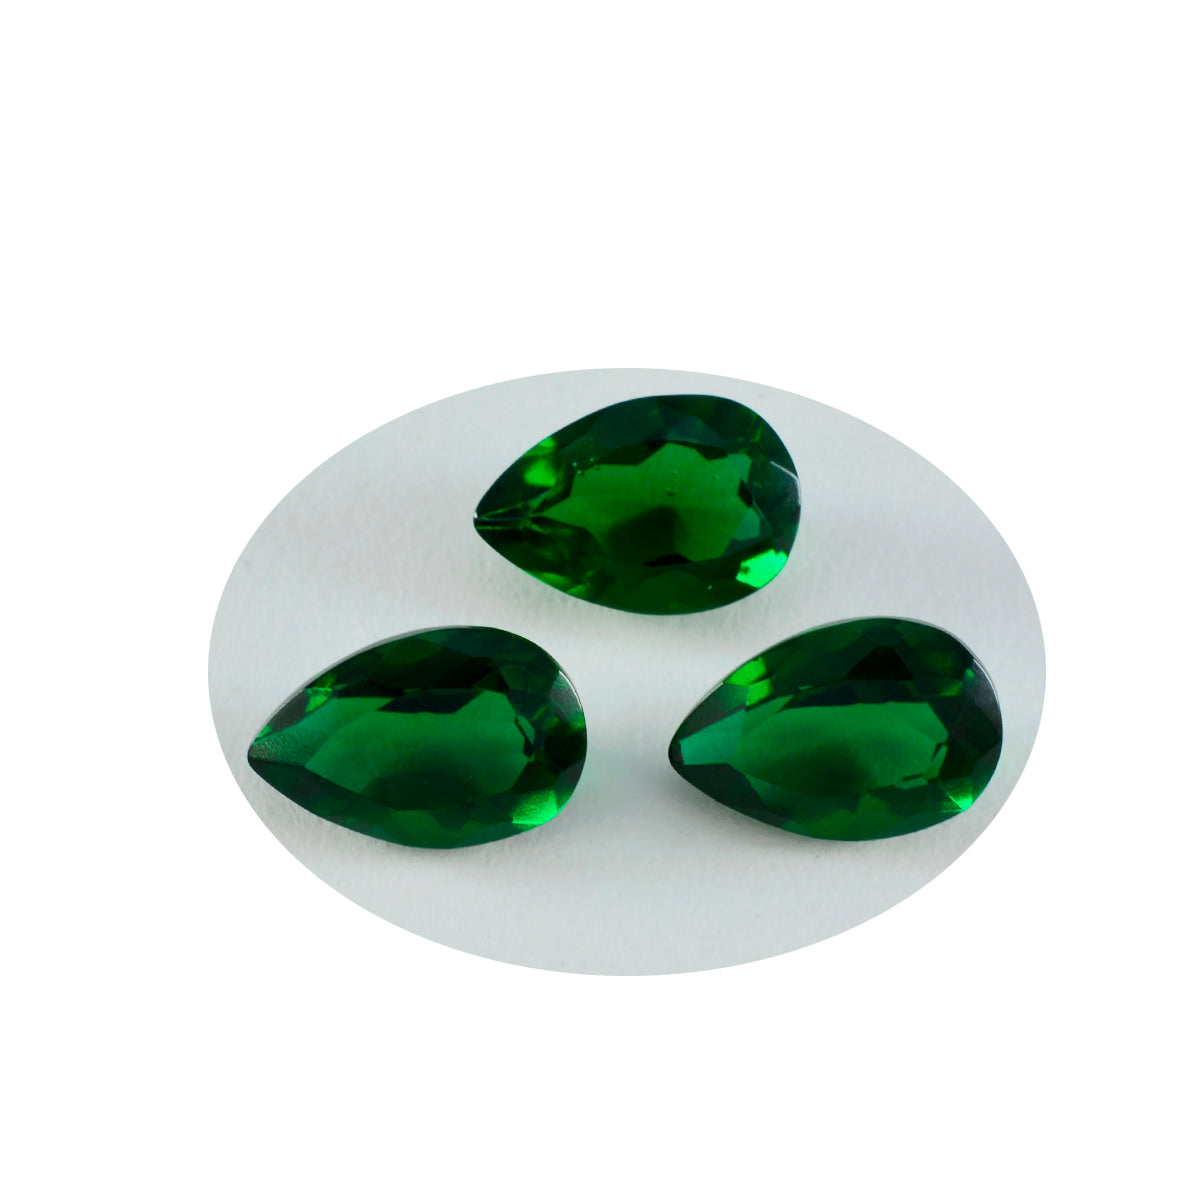 Riyogems 1PC Green Emerald CZ Faceted 8x12 mm Pear Shape wonderful Quality Gemstone